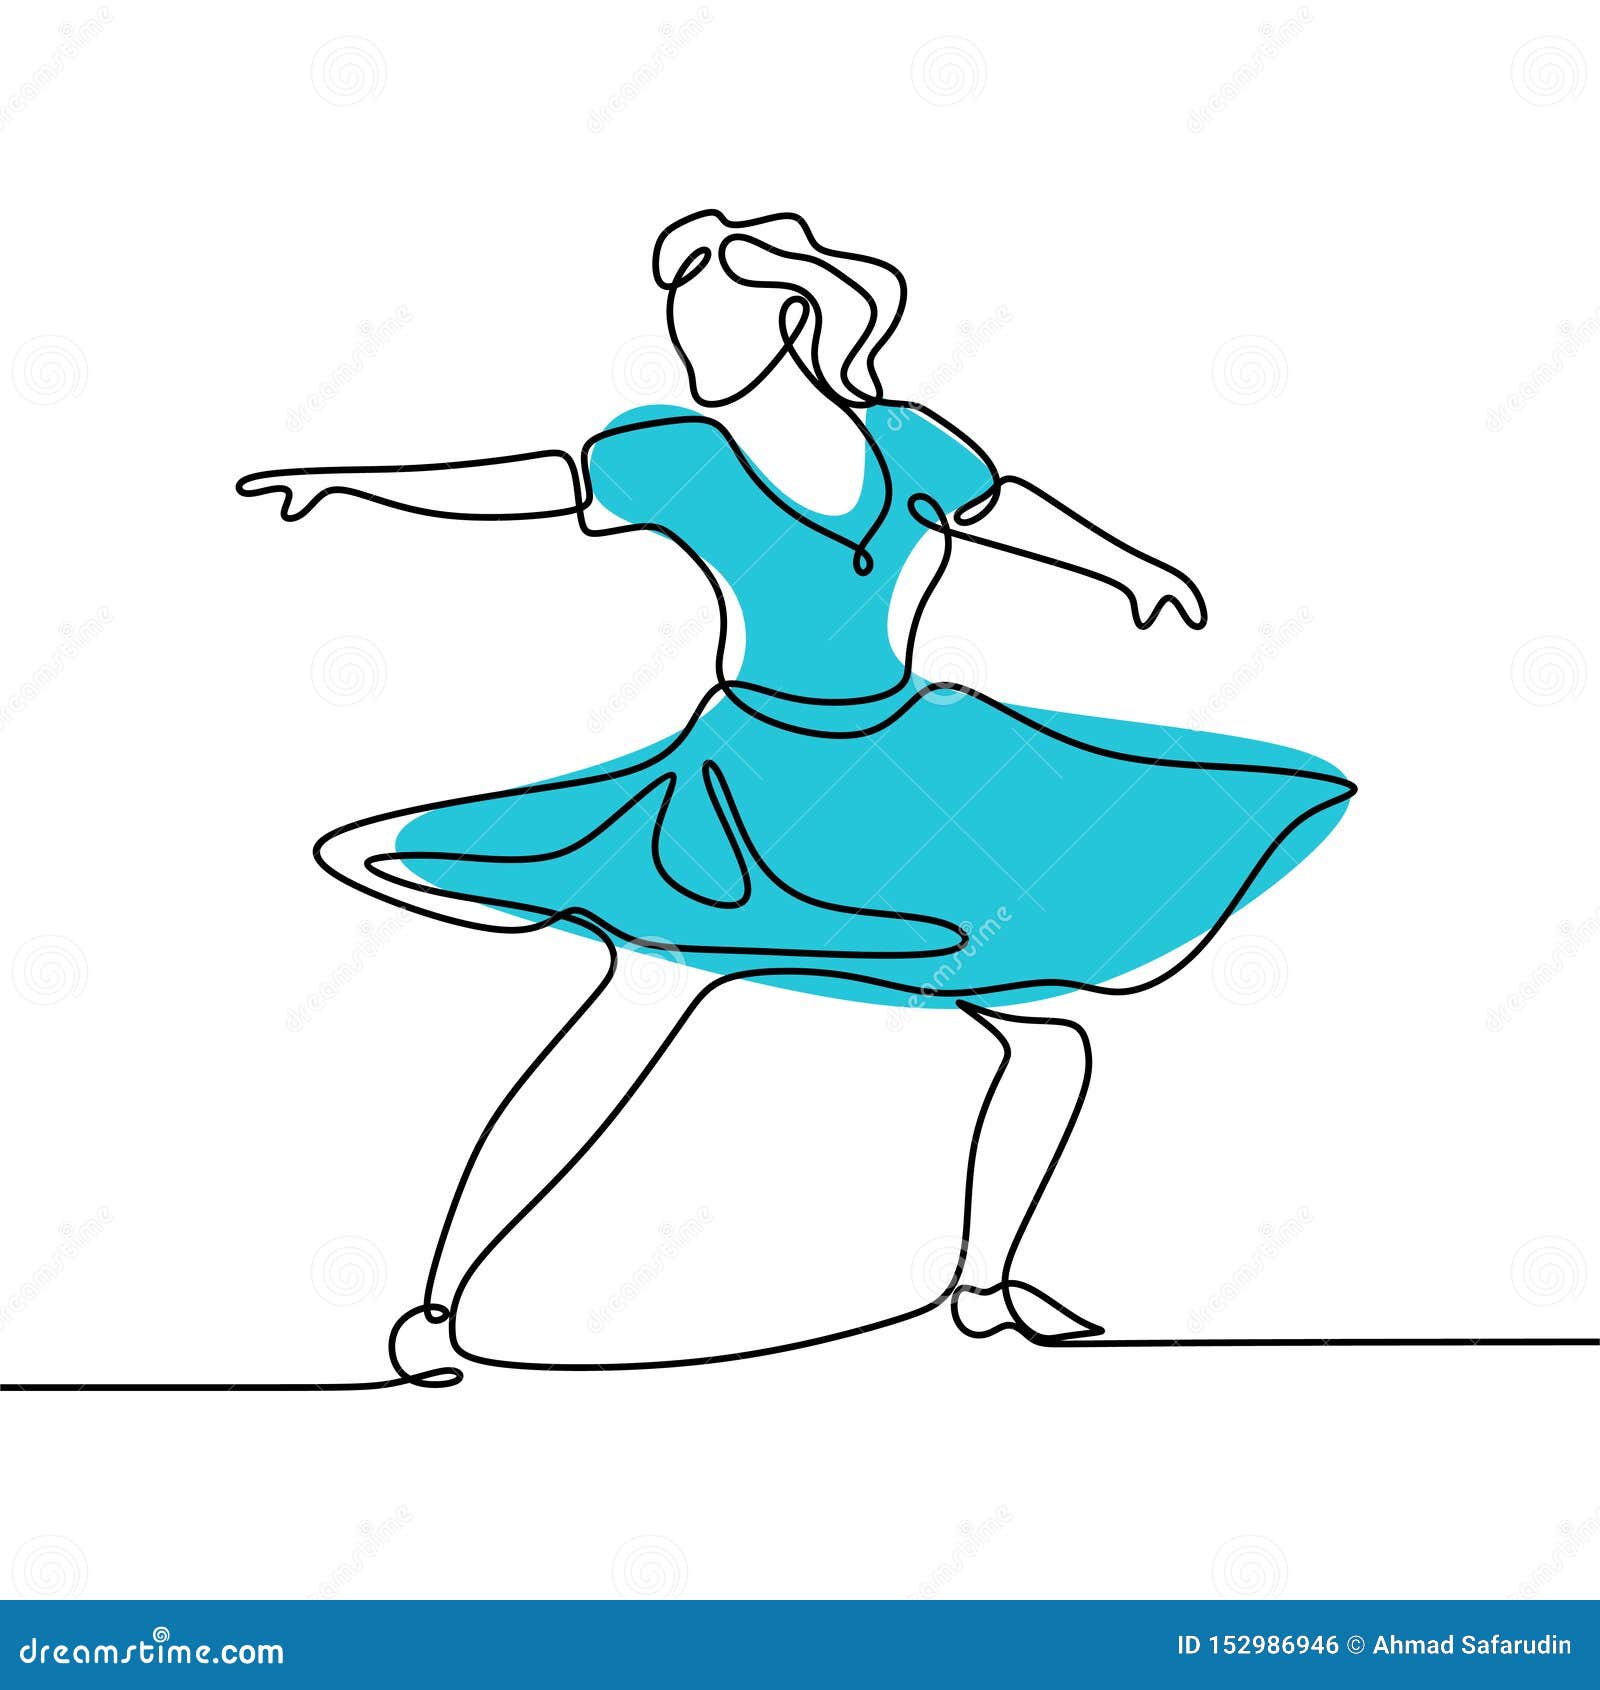 Dancing Girl by adementedchief on DeviantArt